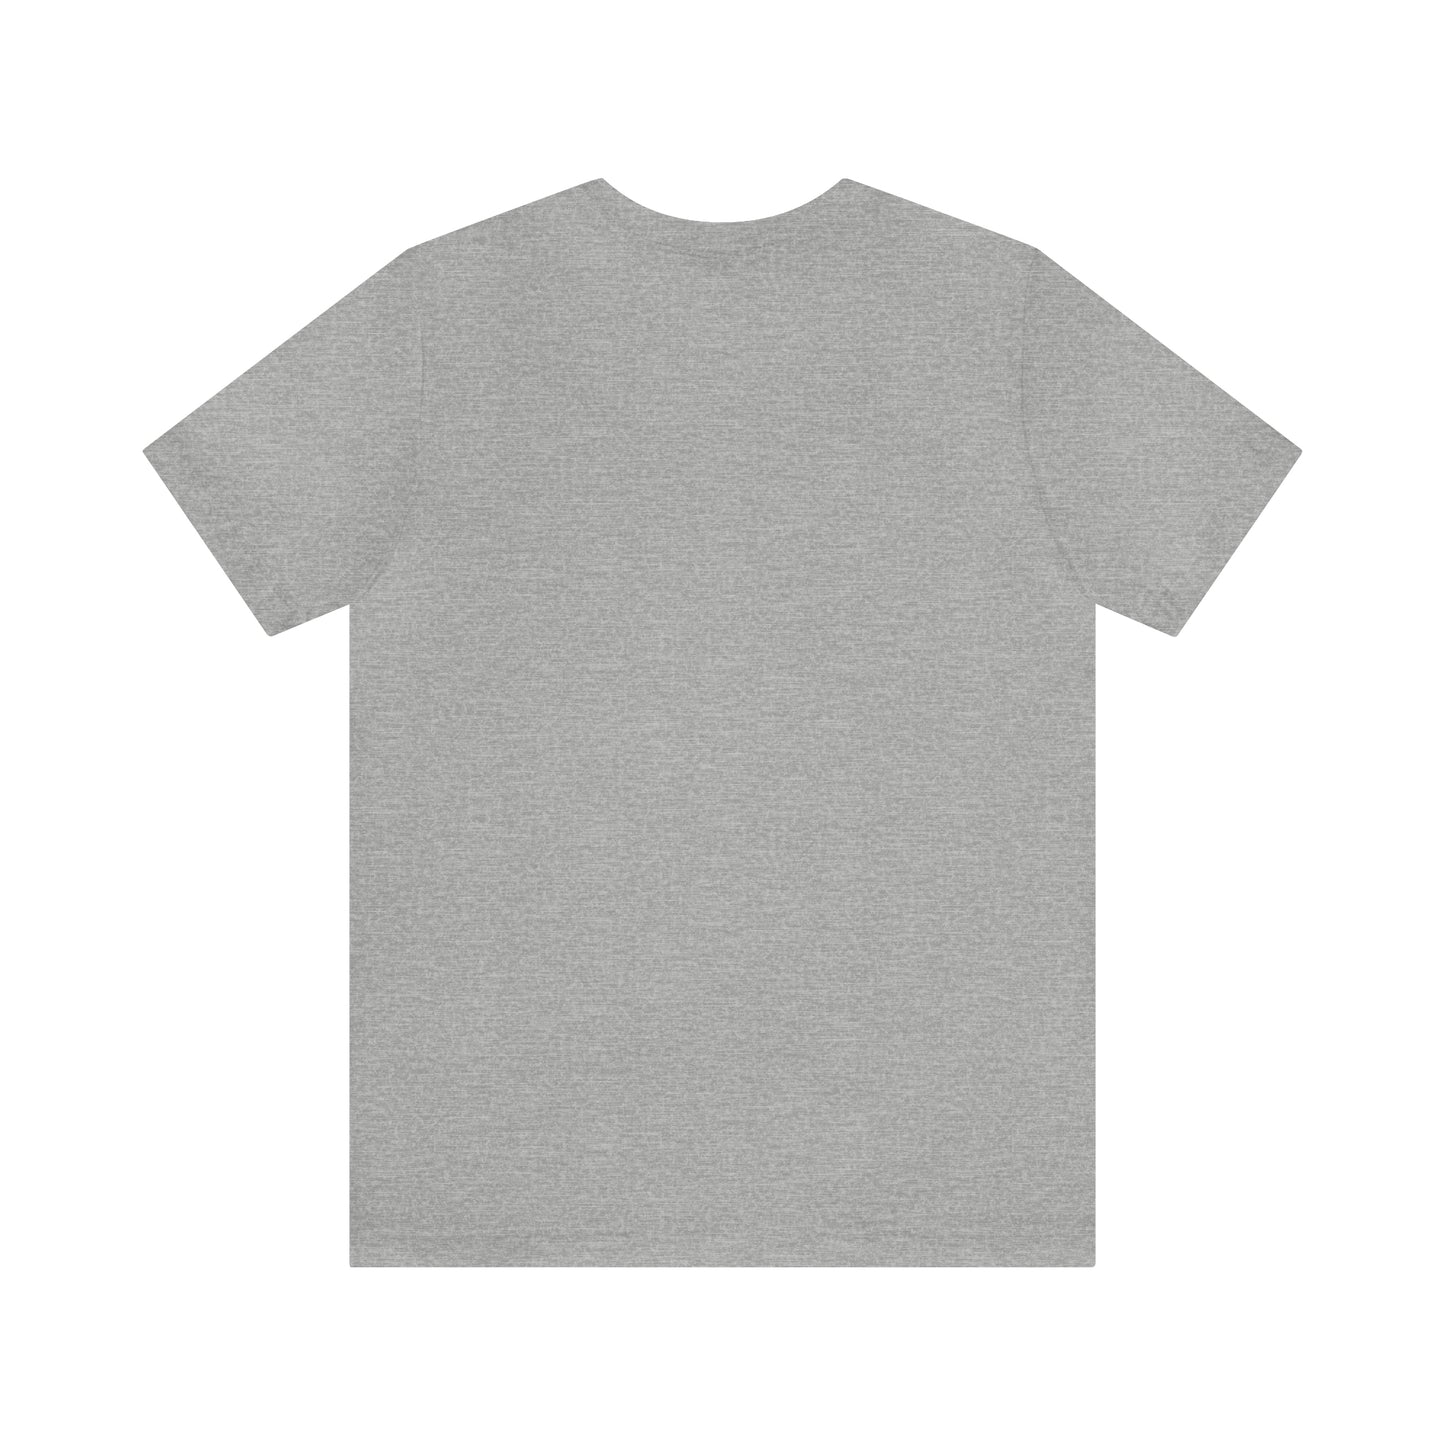 Autumn Tee | Fall Season T-Shirt | For Fall Lover T-Shirt Petrova Designs